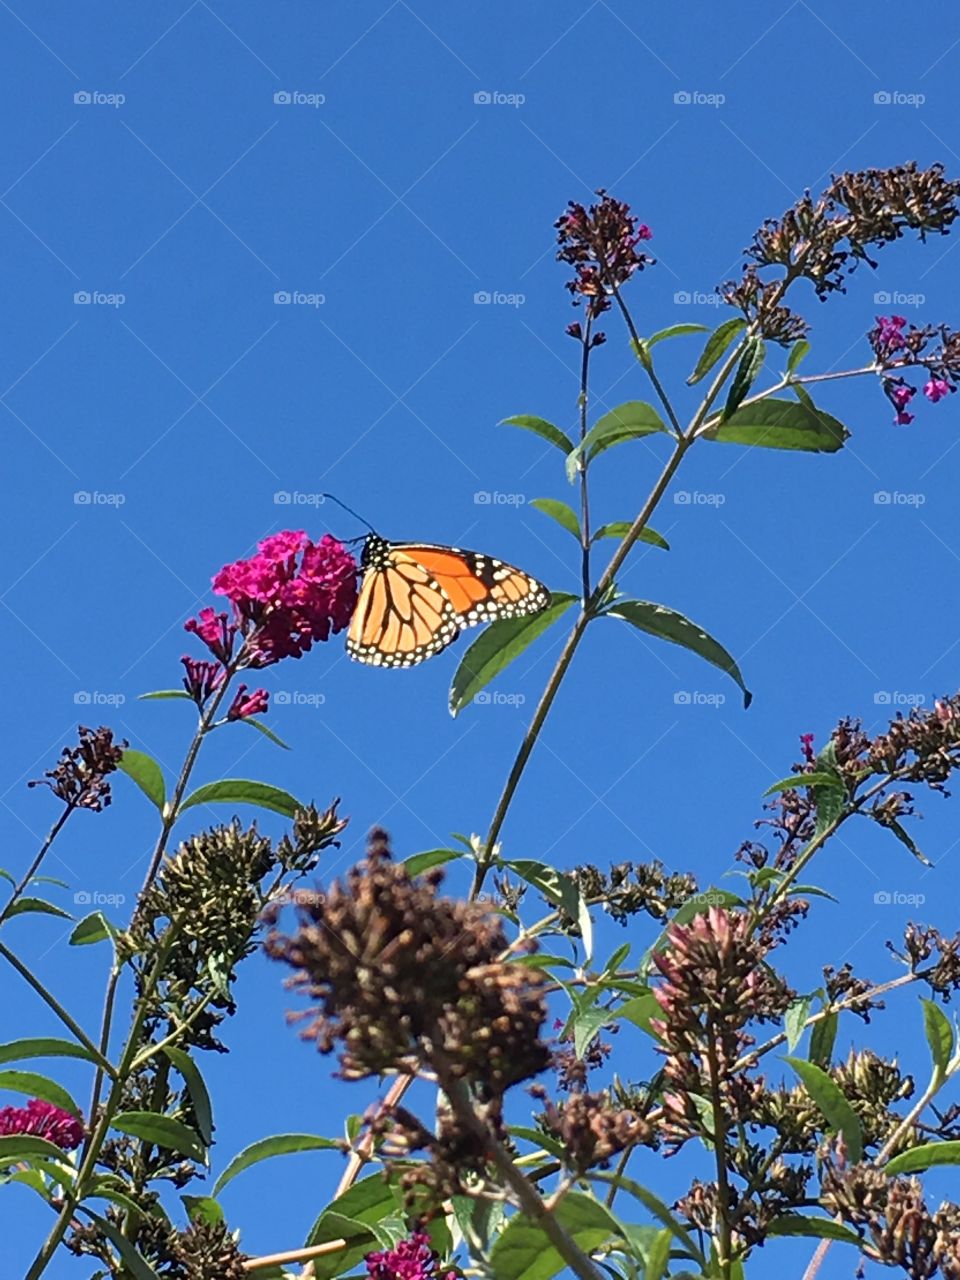 Butterfly Beauty 